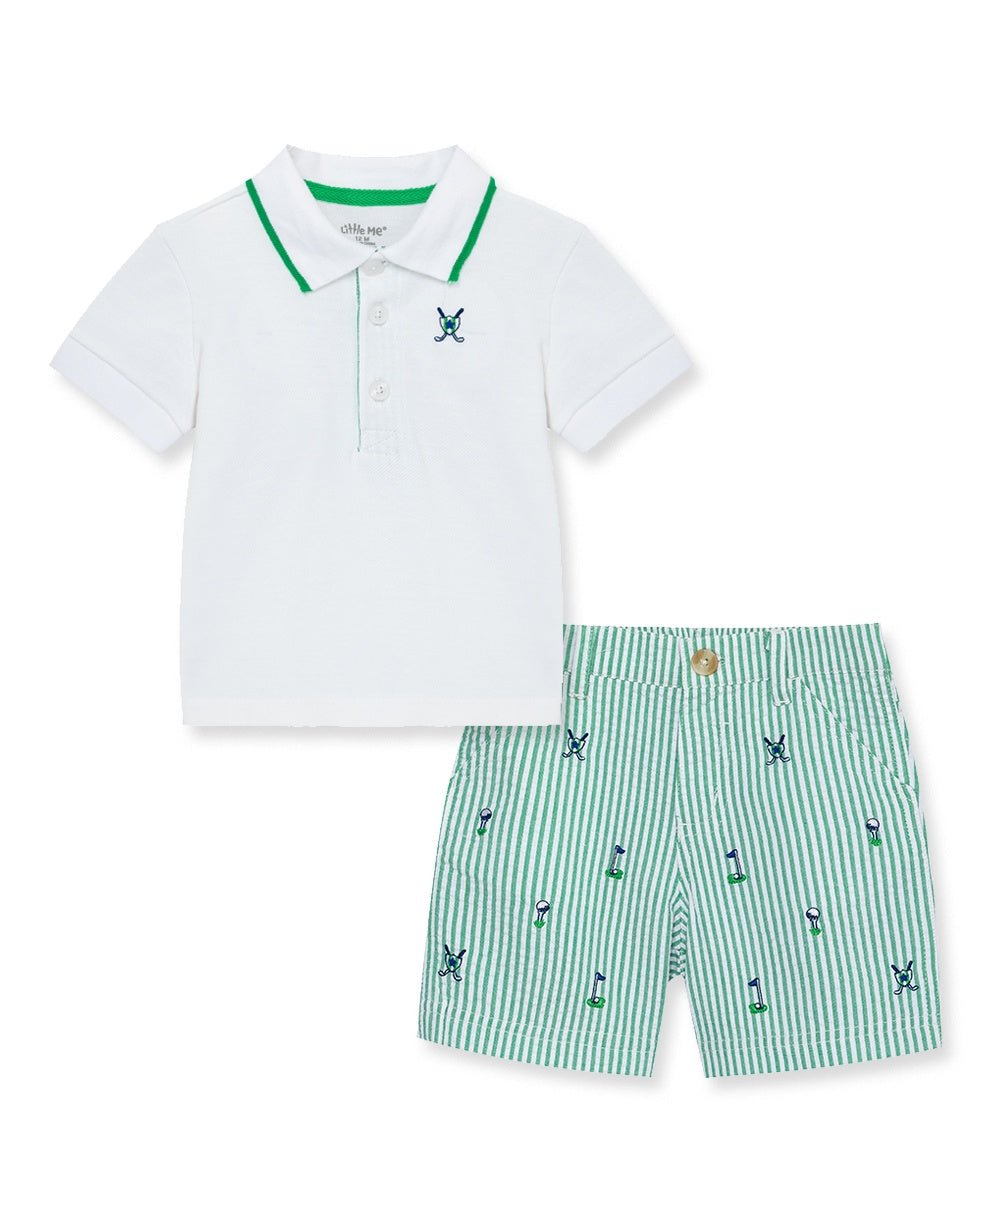 Golf Polo Short Set - Lush Lemon - Children's Clothing - Little Me - 745644908076